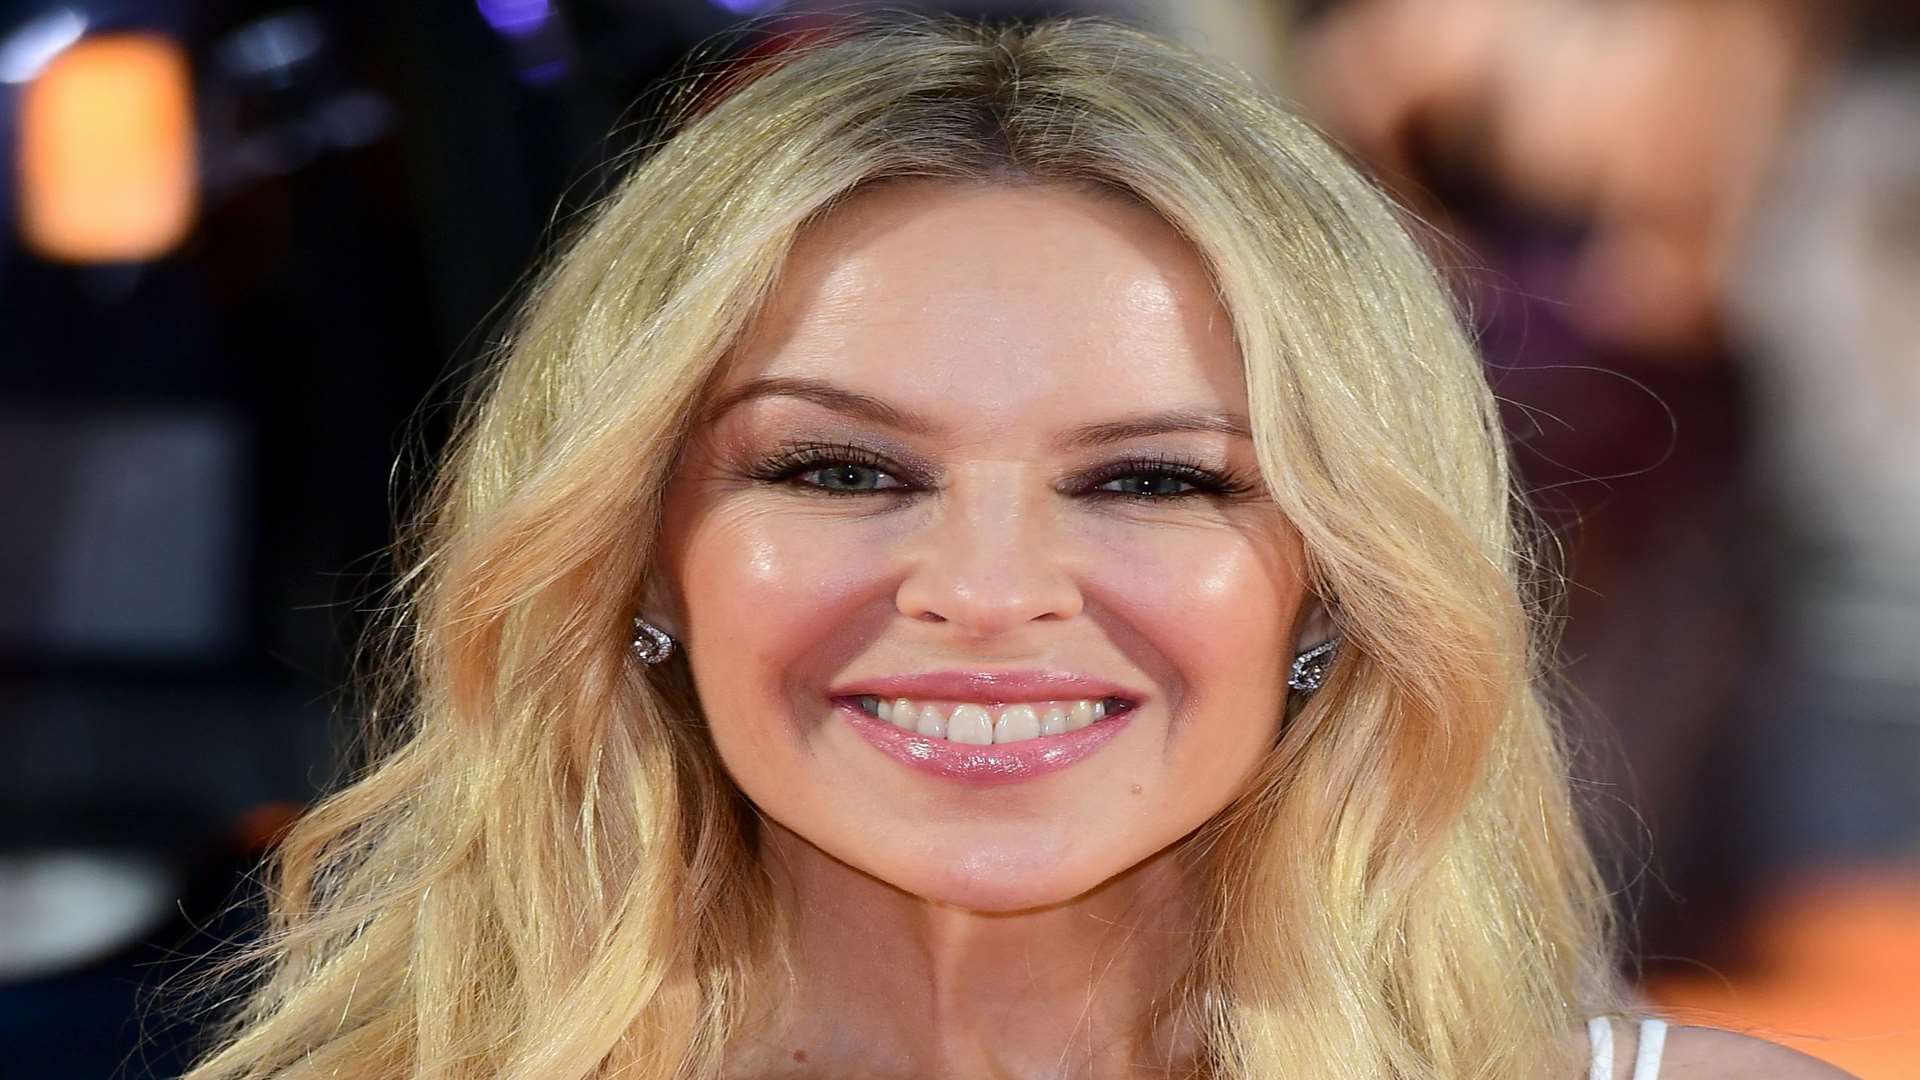 Kylie Minogue championed the grapefruit diet